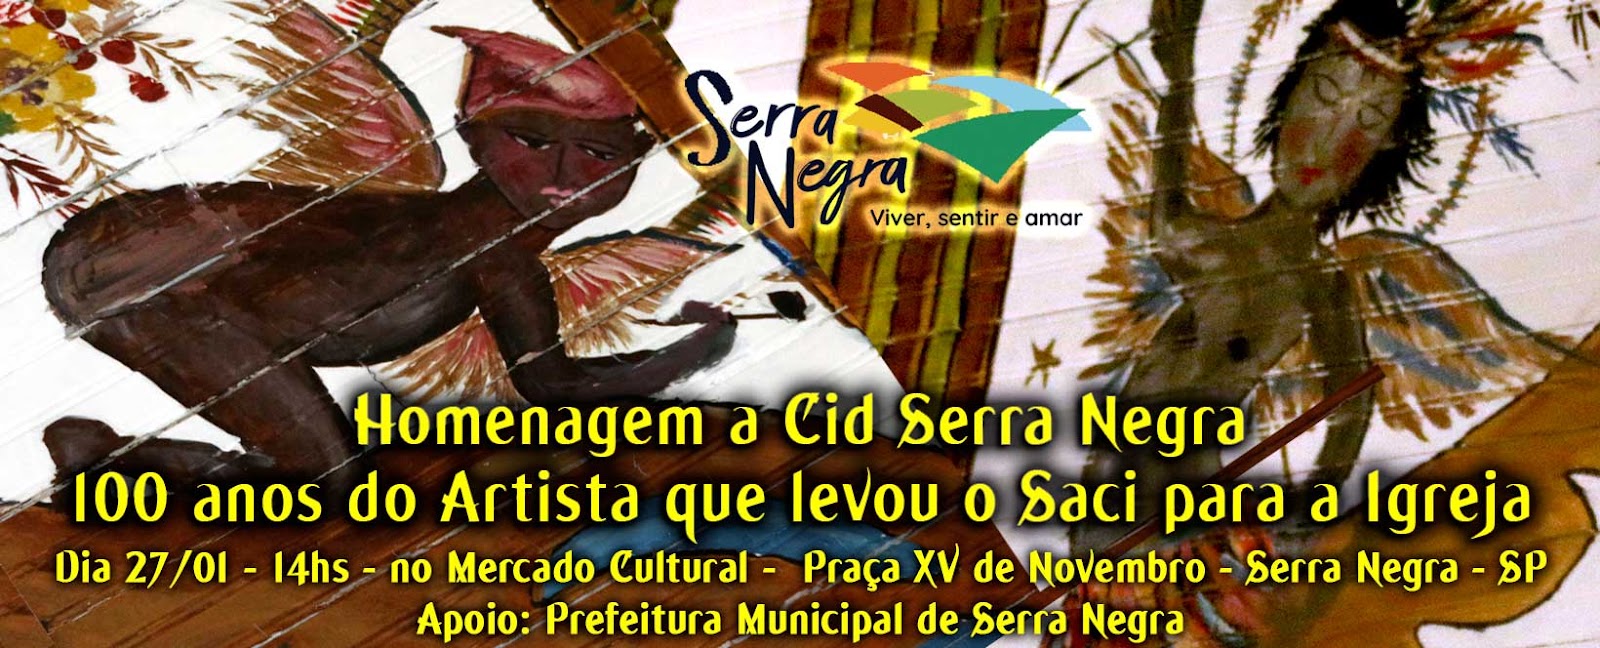 Cid Serra Negra por Henrique Vieira Filho